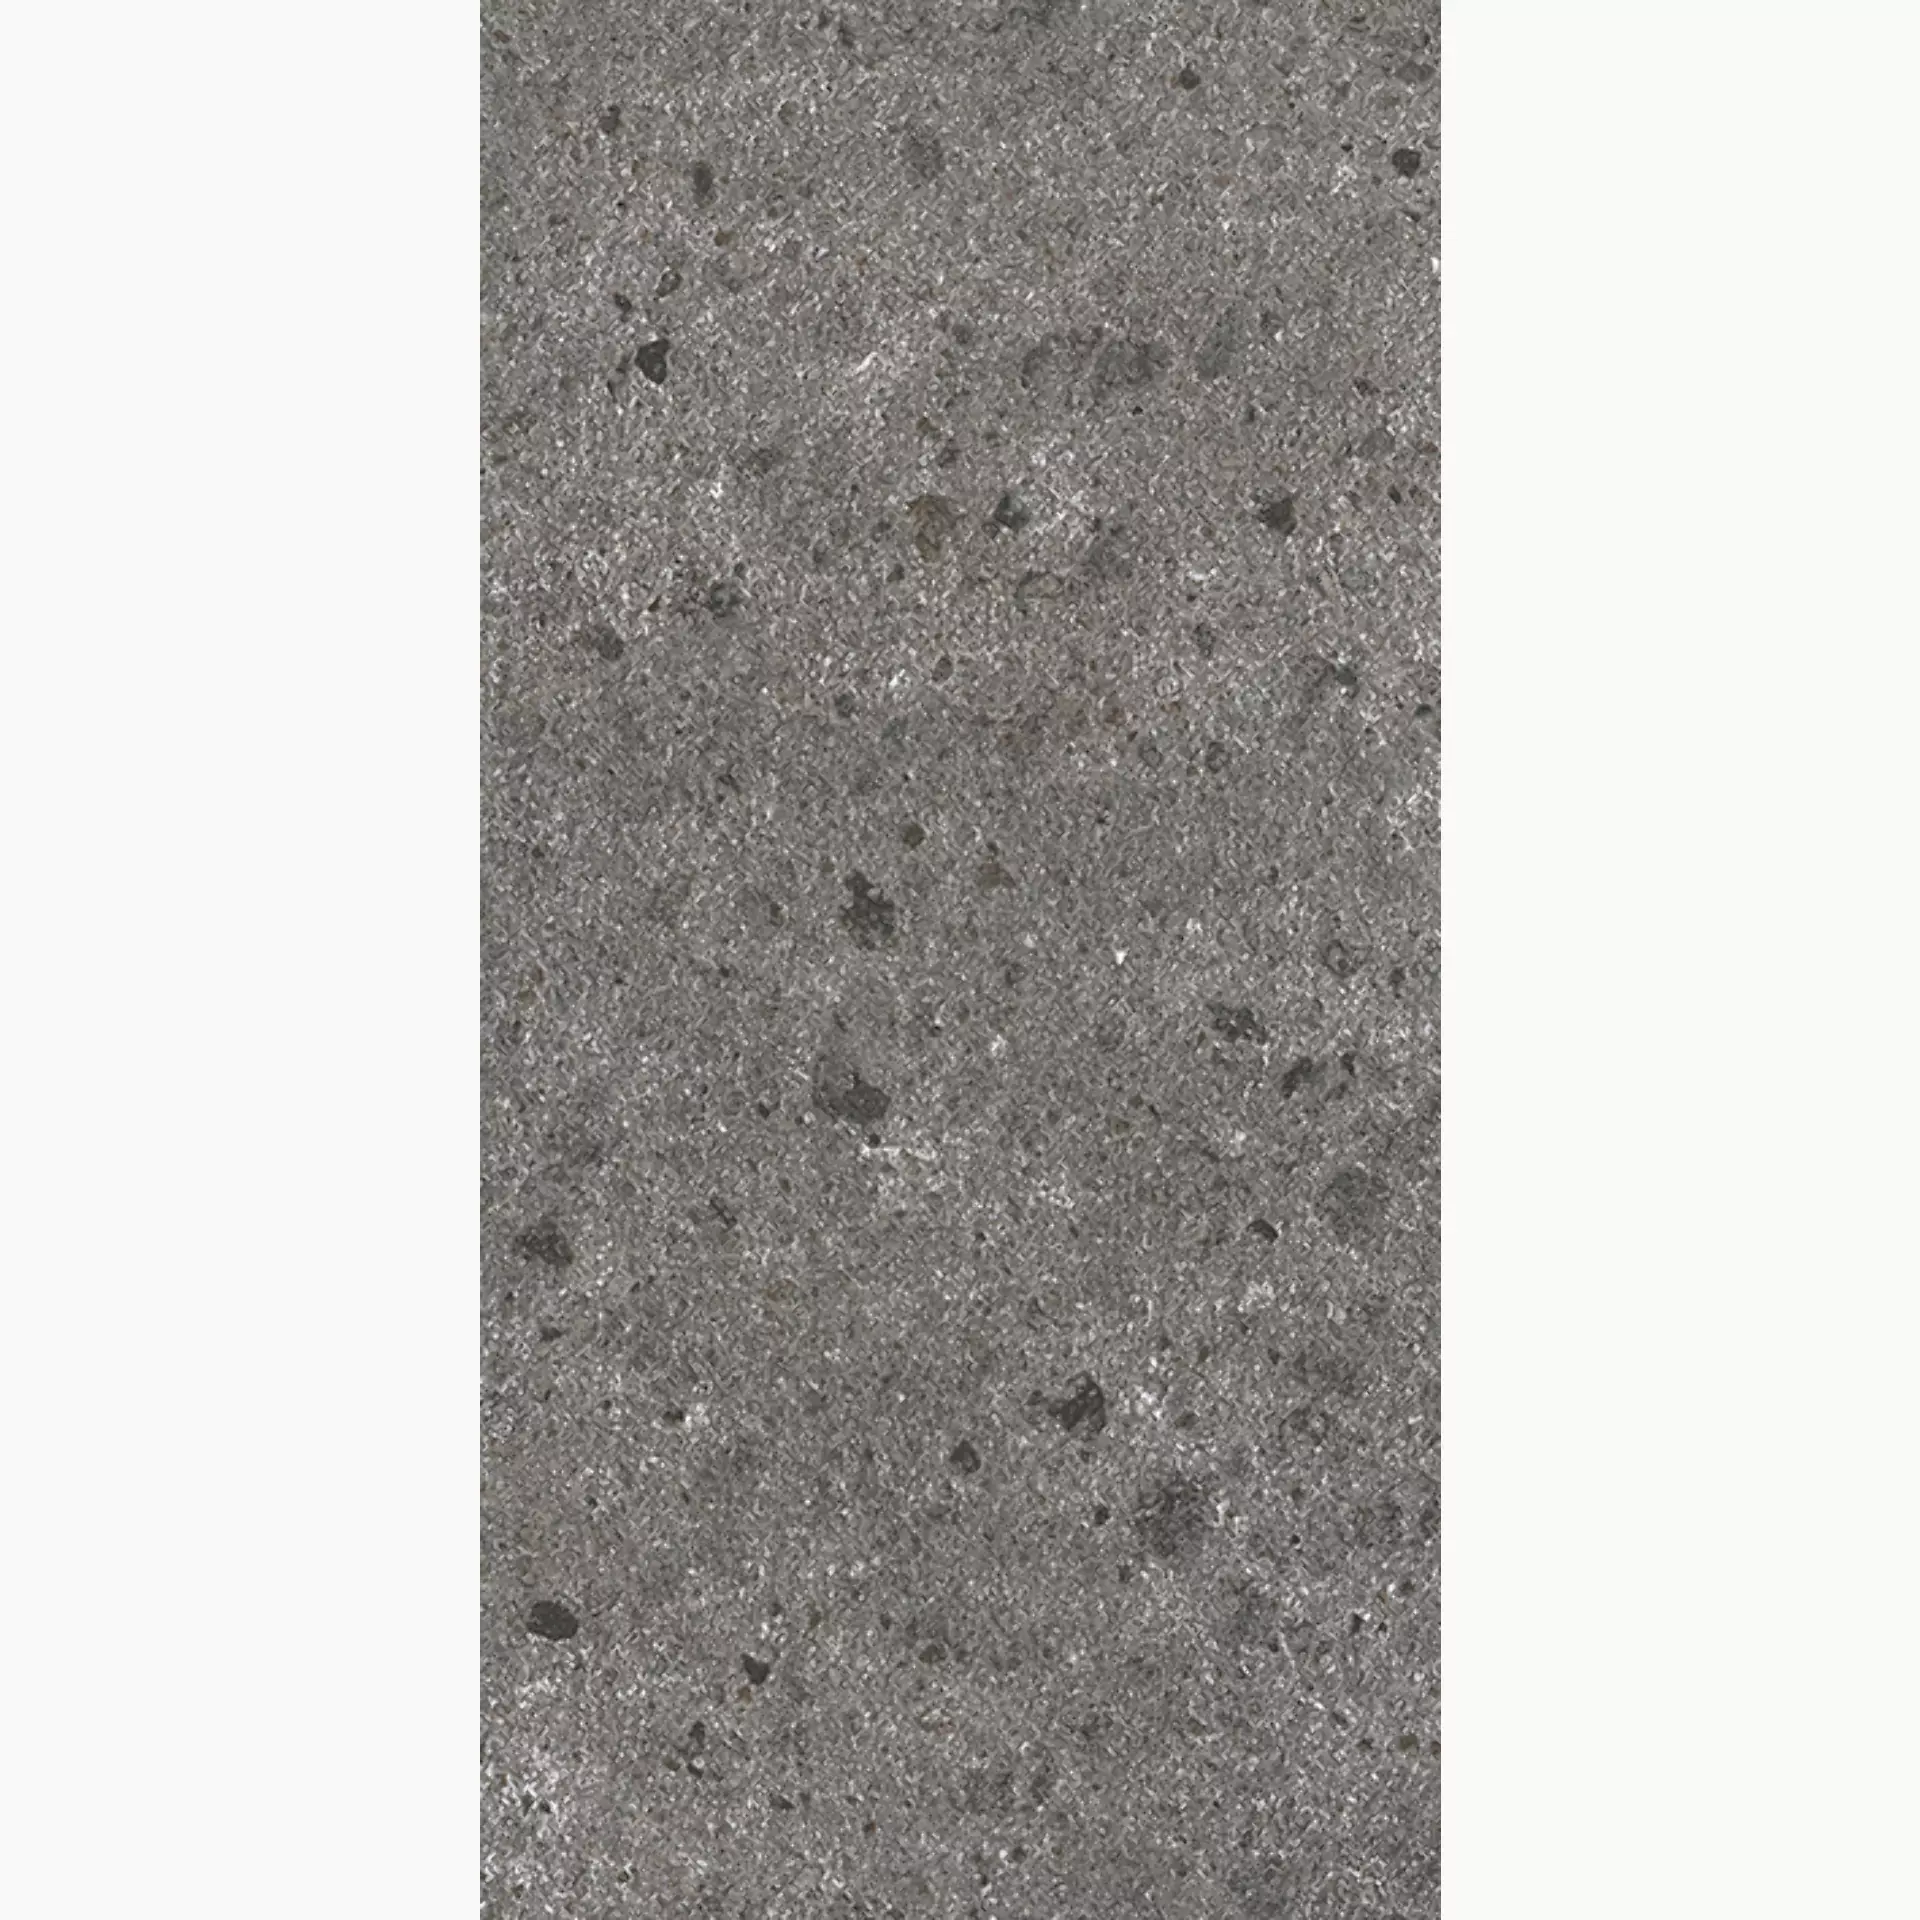 Wandfliese,Bodenfliese Villeroy & Boch Aberdeen Slate Grey Matt Slate Grey 2526-SB9R matt 30x60cm rektifiziert 10mm